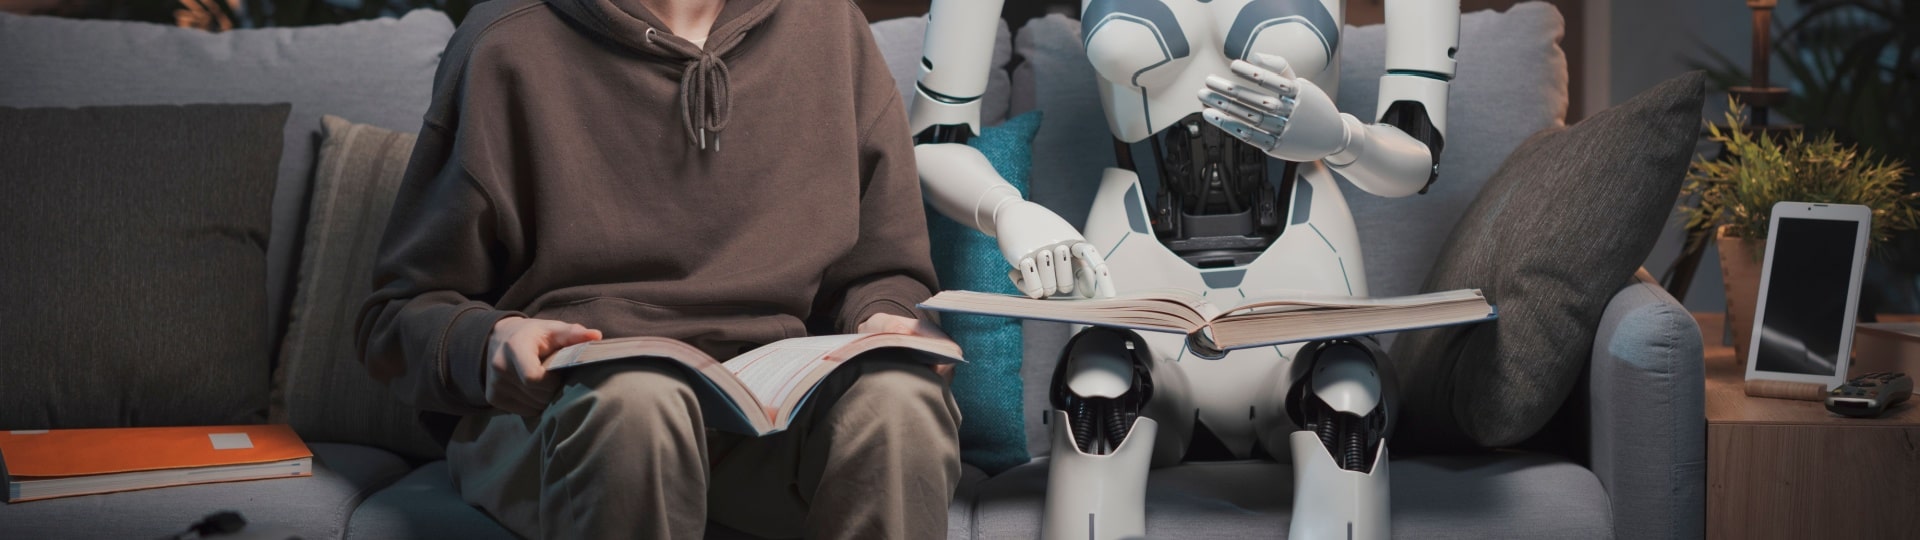 Apple zkoumá možnost výroby robotů do domácnosti